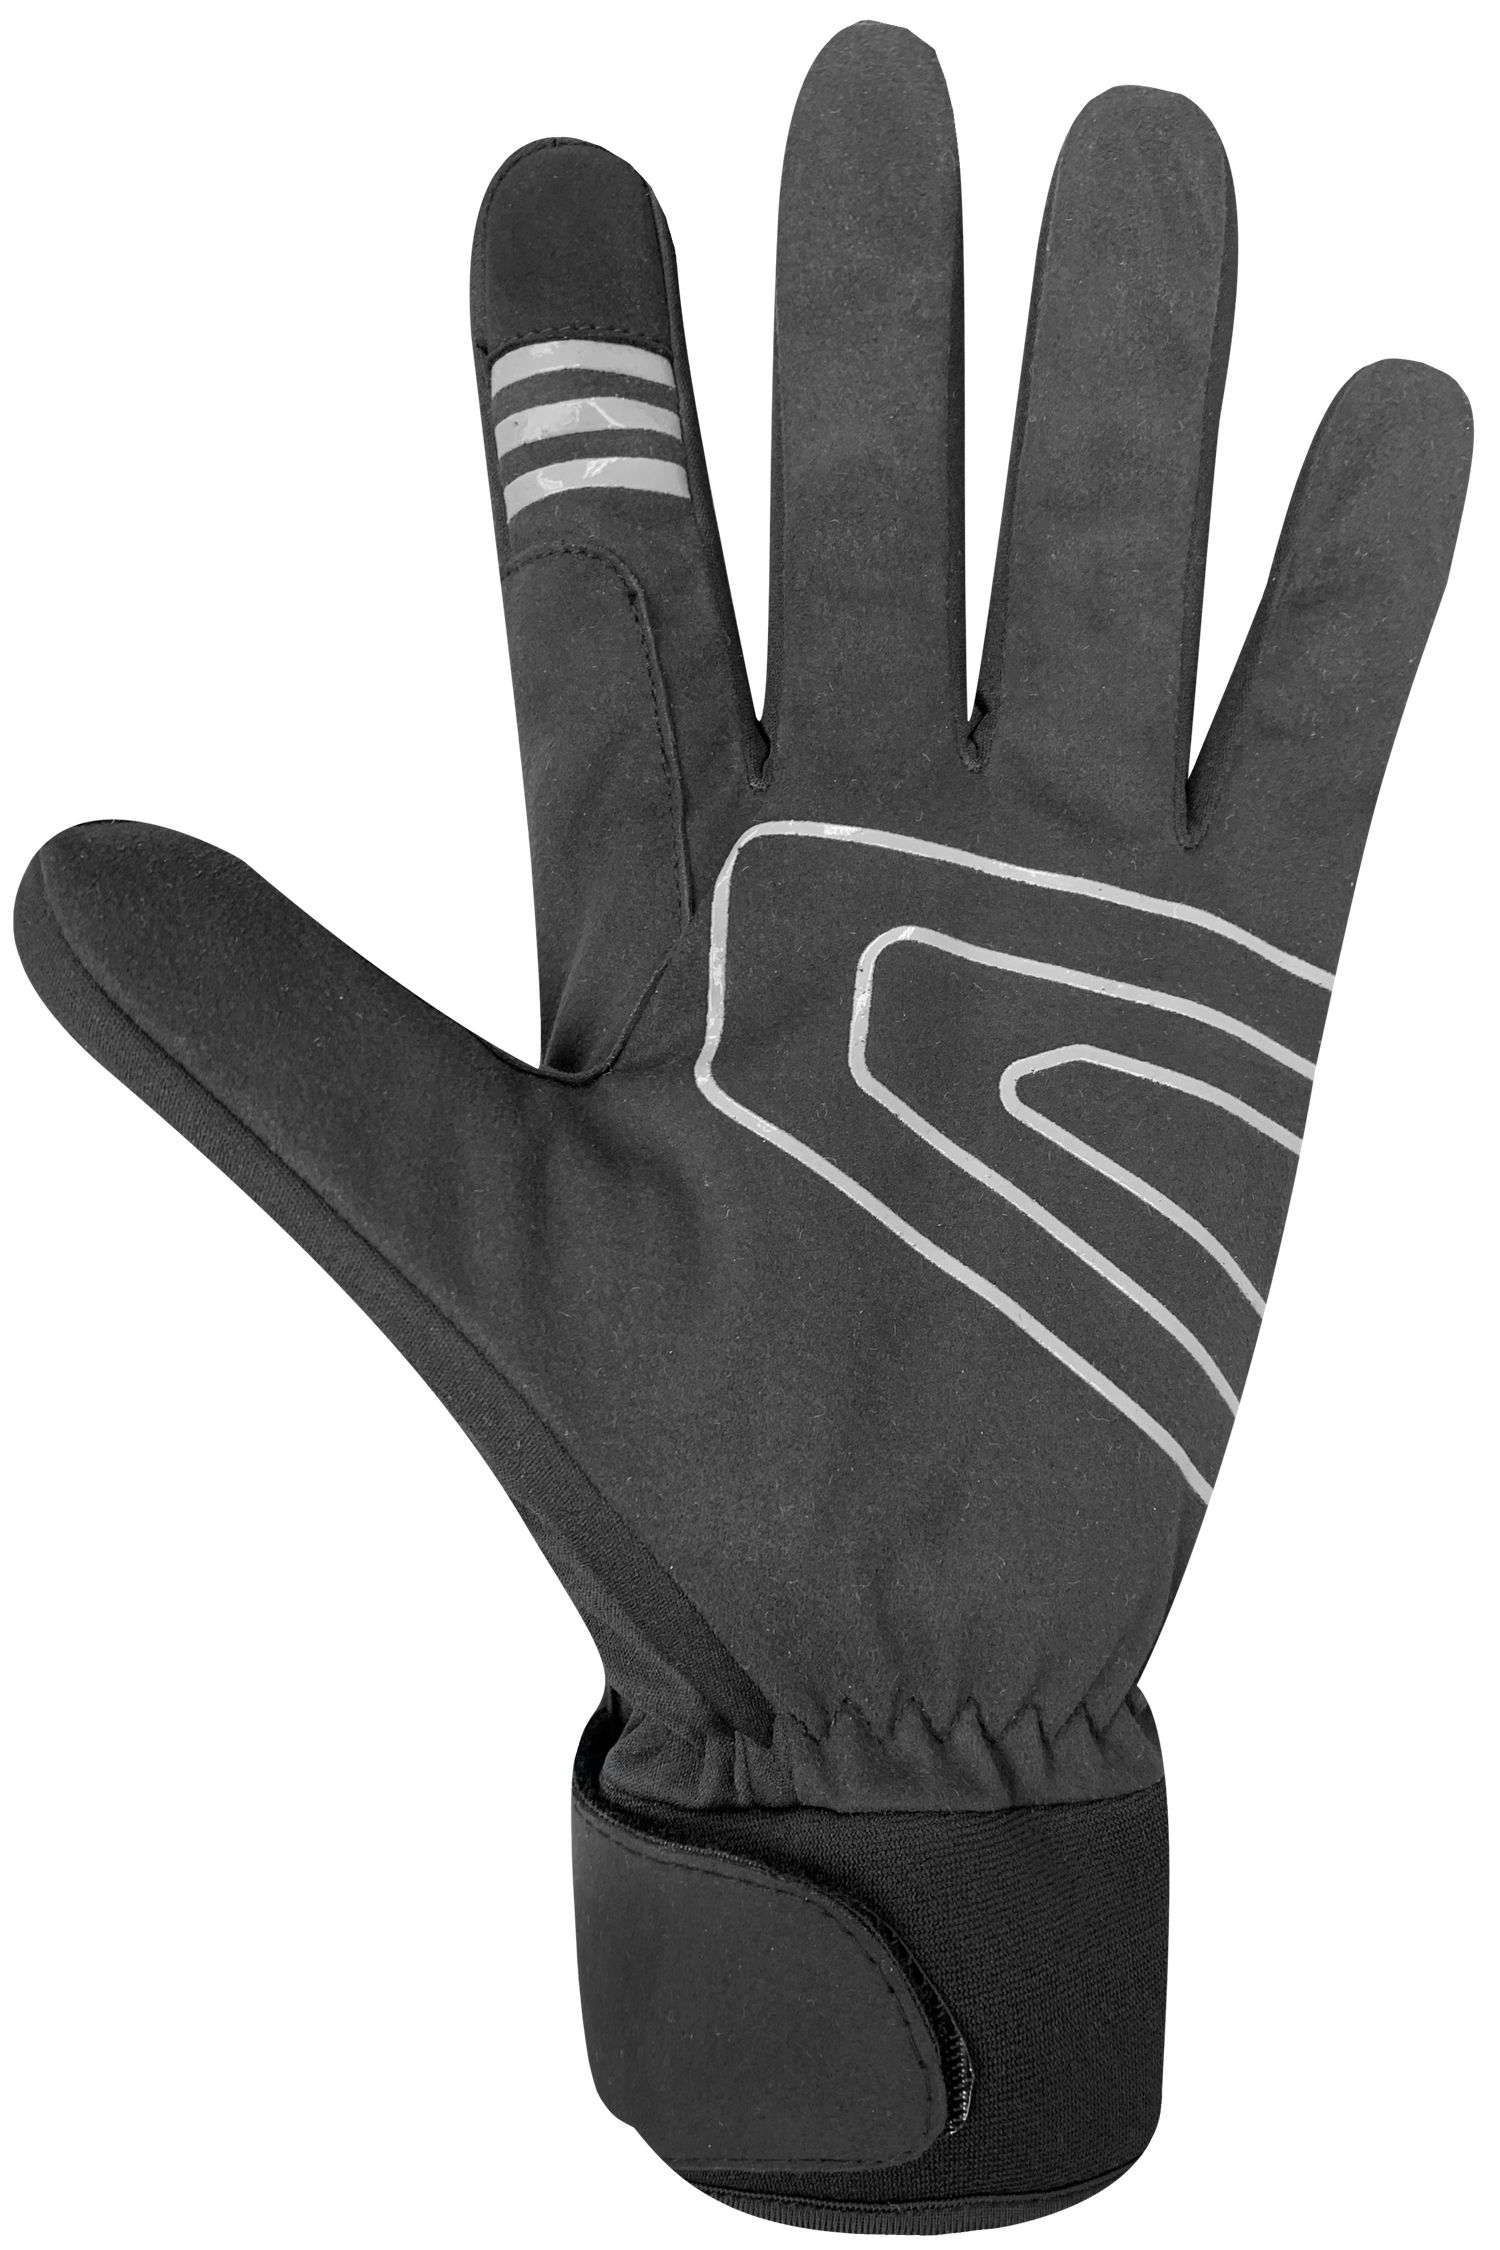 Loop XC Gloves - Adult, Black